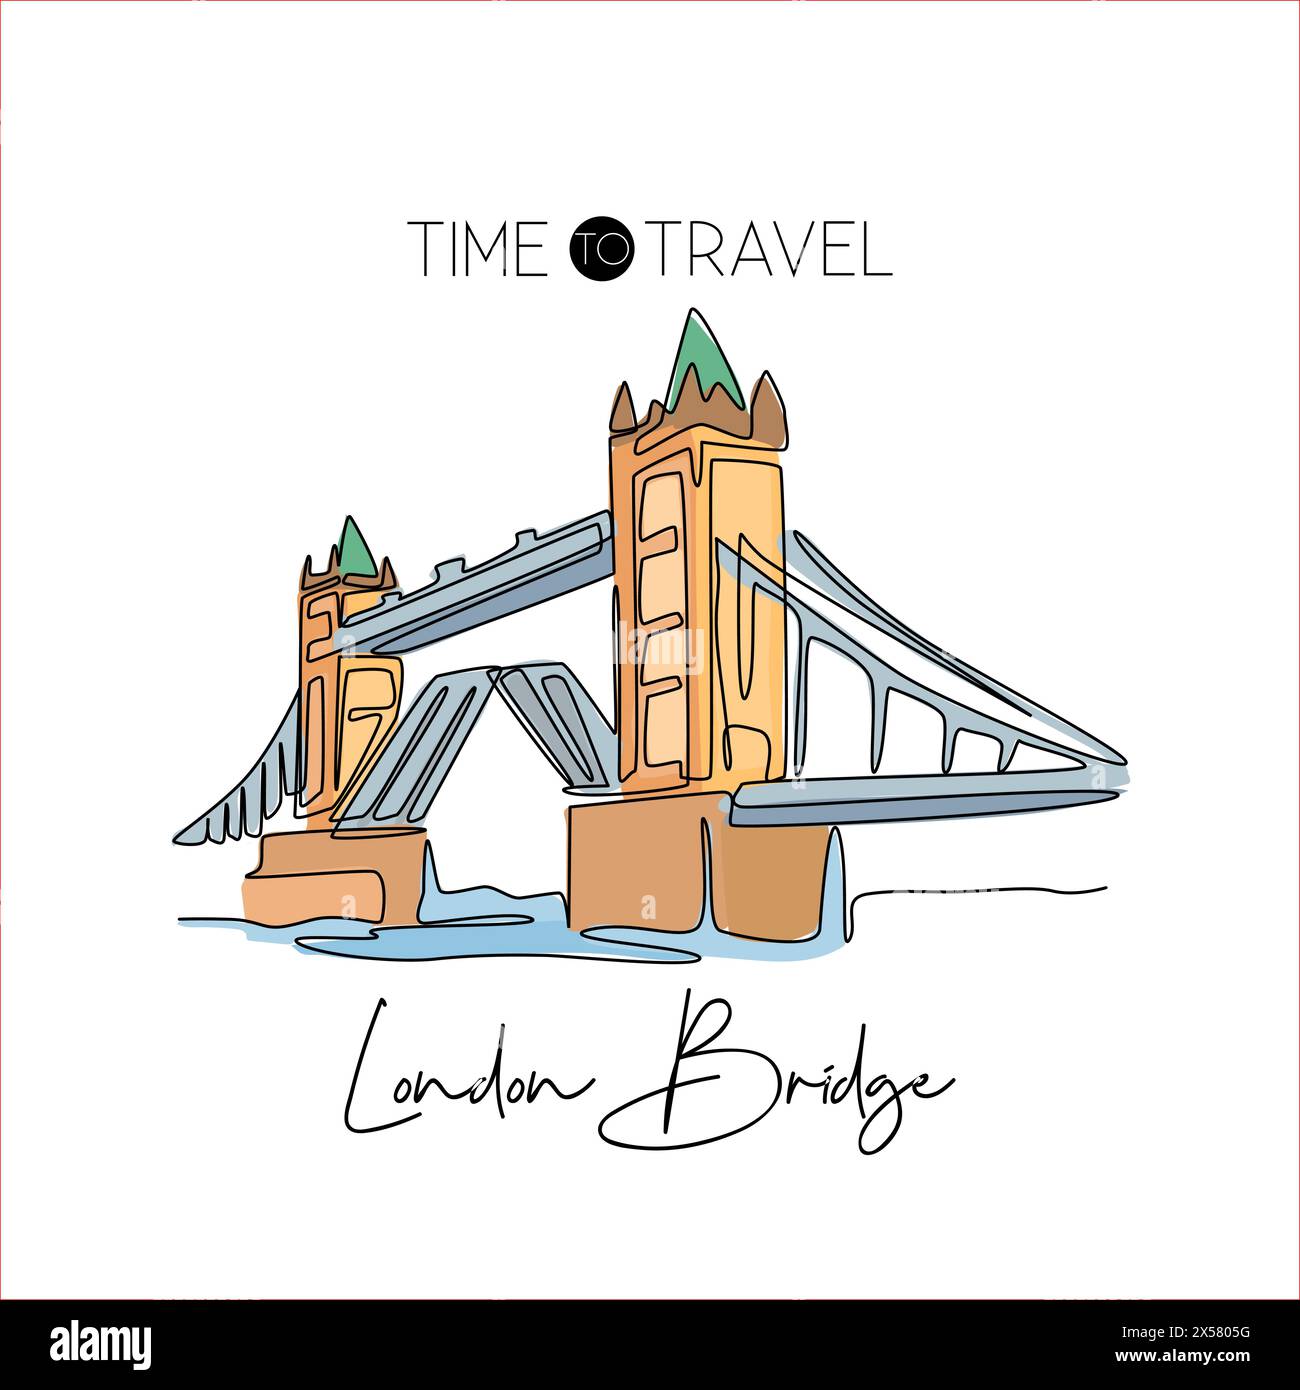 Eine einzige einzeilige Zeichnung der Tower Bridge Wahrzeichen. Historischer, ikonischer Ort in London, Großbritannien. Tourismus und Reise Postkarte Wohnwand Dekor Kunstkonzept. Modern Stock Vektor